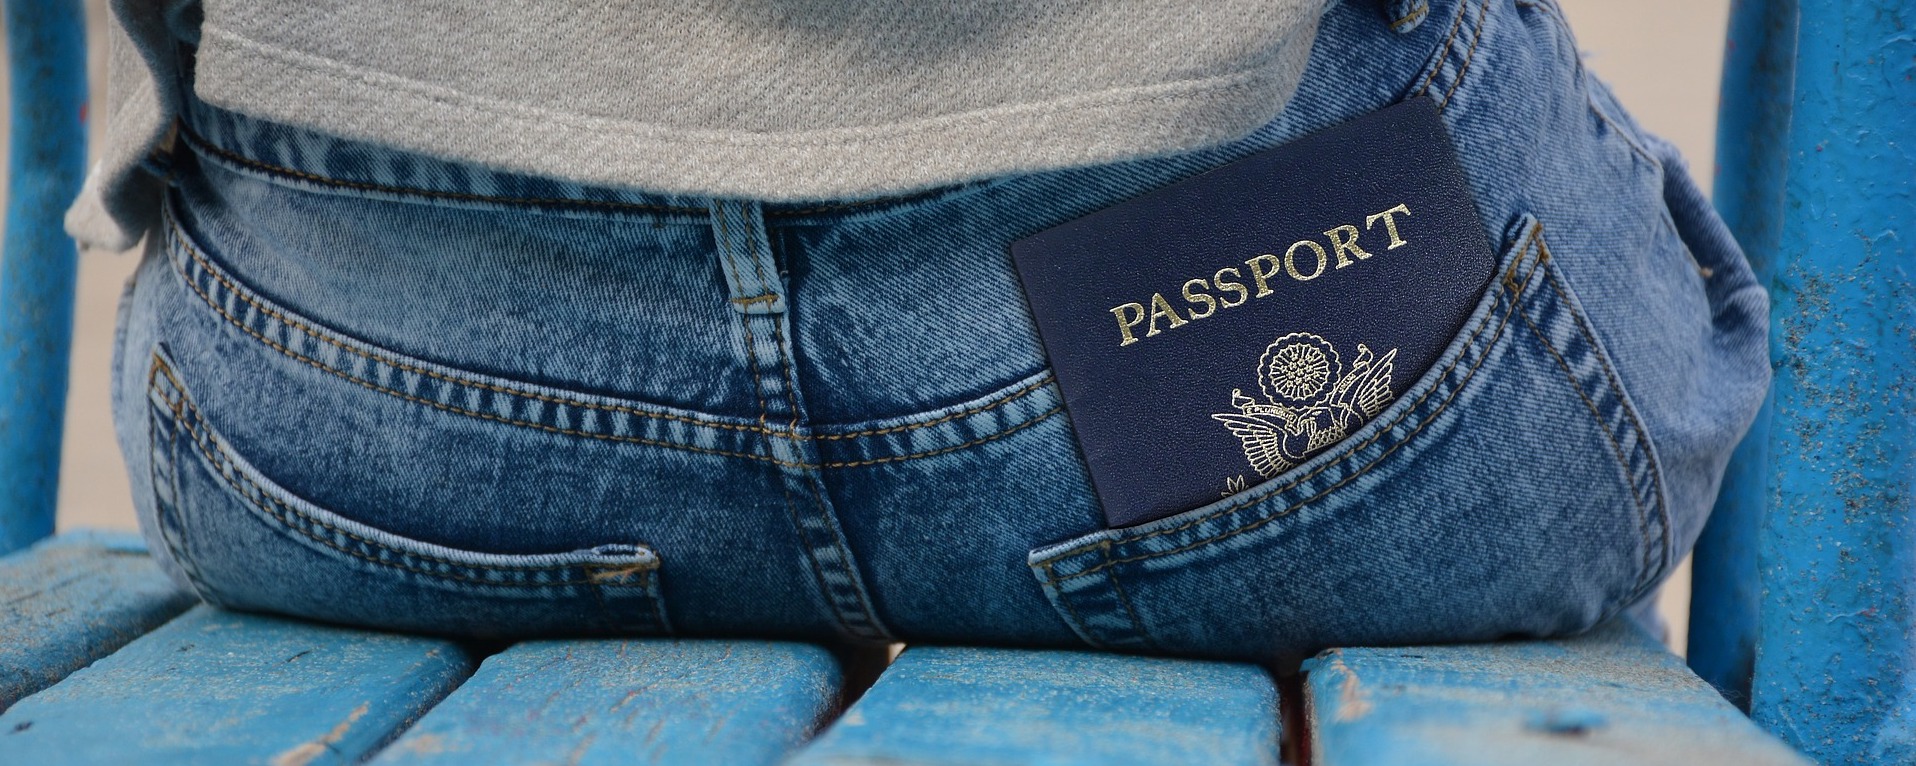 Uw paspoort vertalen? Onze beëdigde vertalers brengen dit voor u in orde!